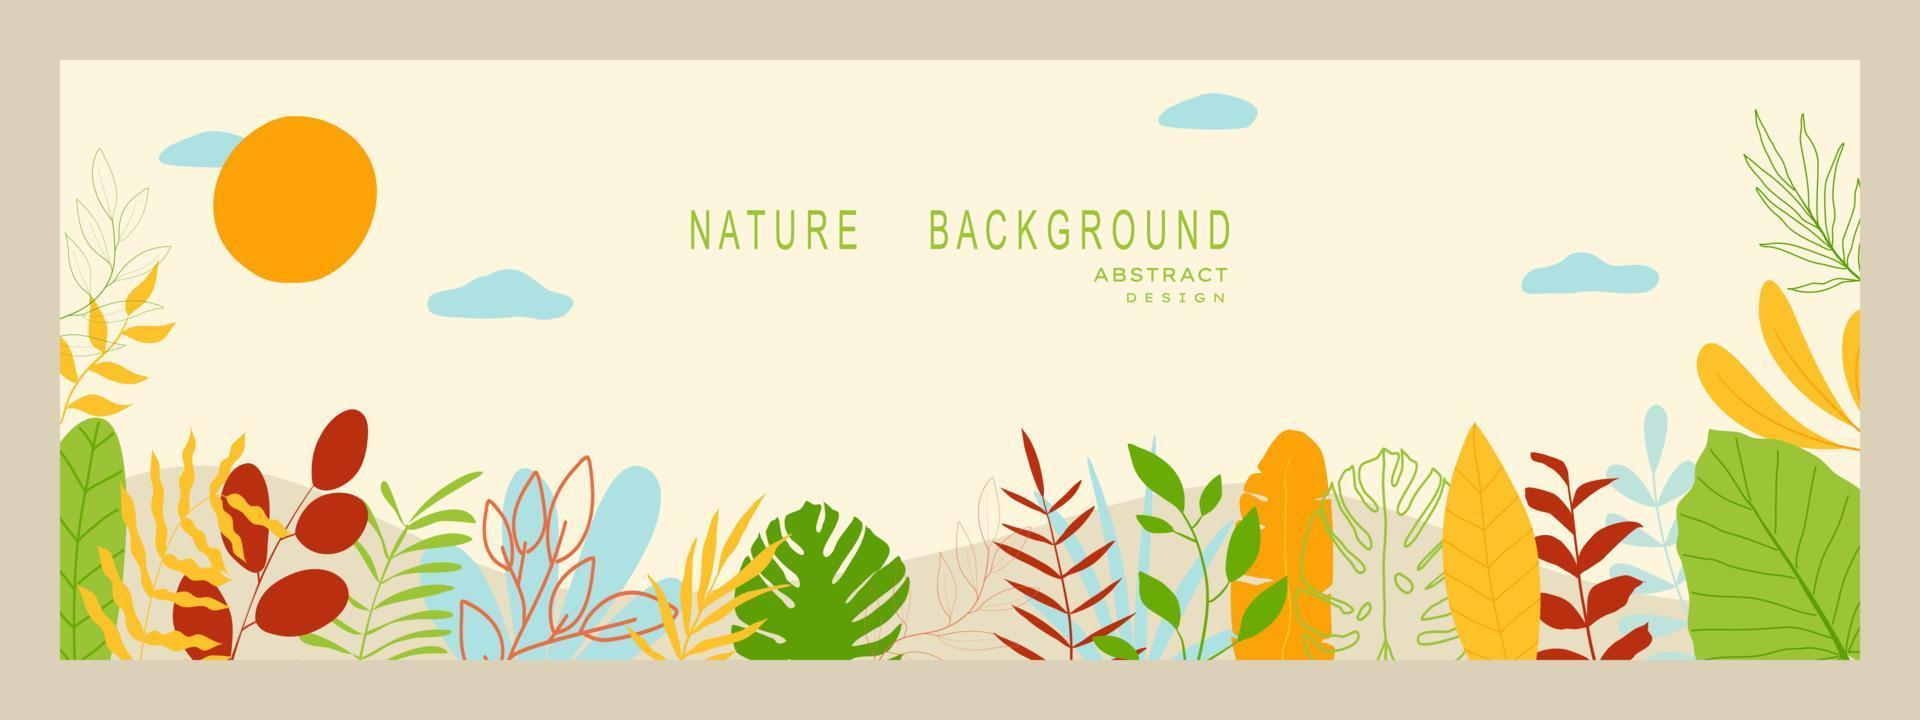 abstracte natuur achtergrond met bladeren en planten. kopieer ruimte voor tekst. vector illustratie